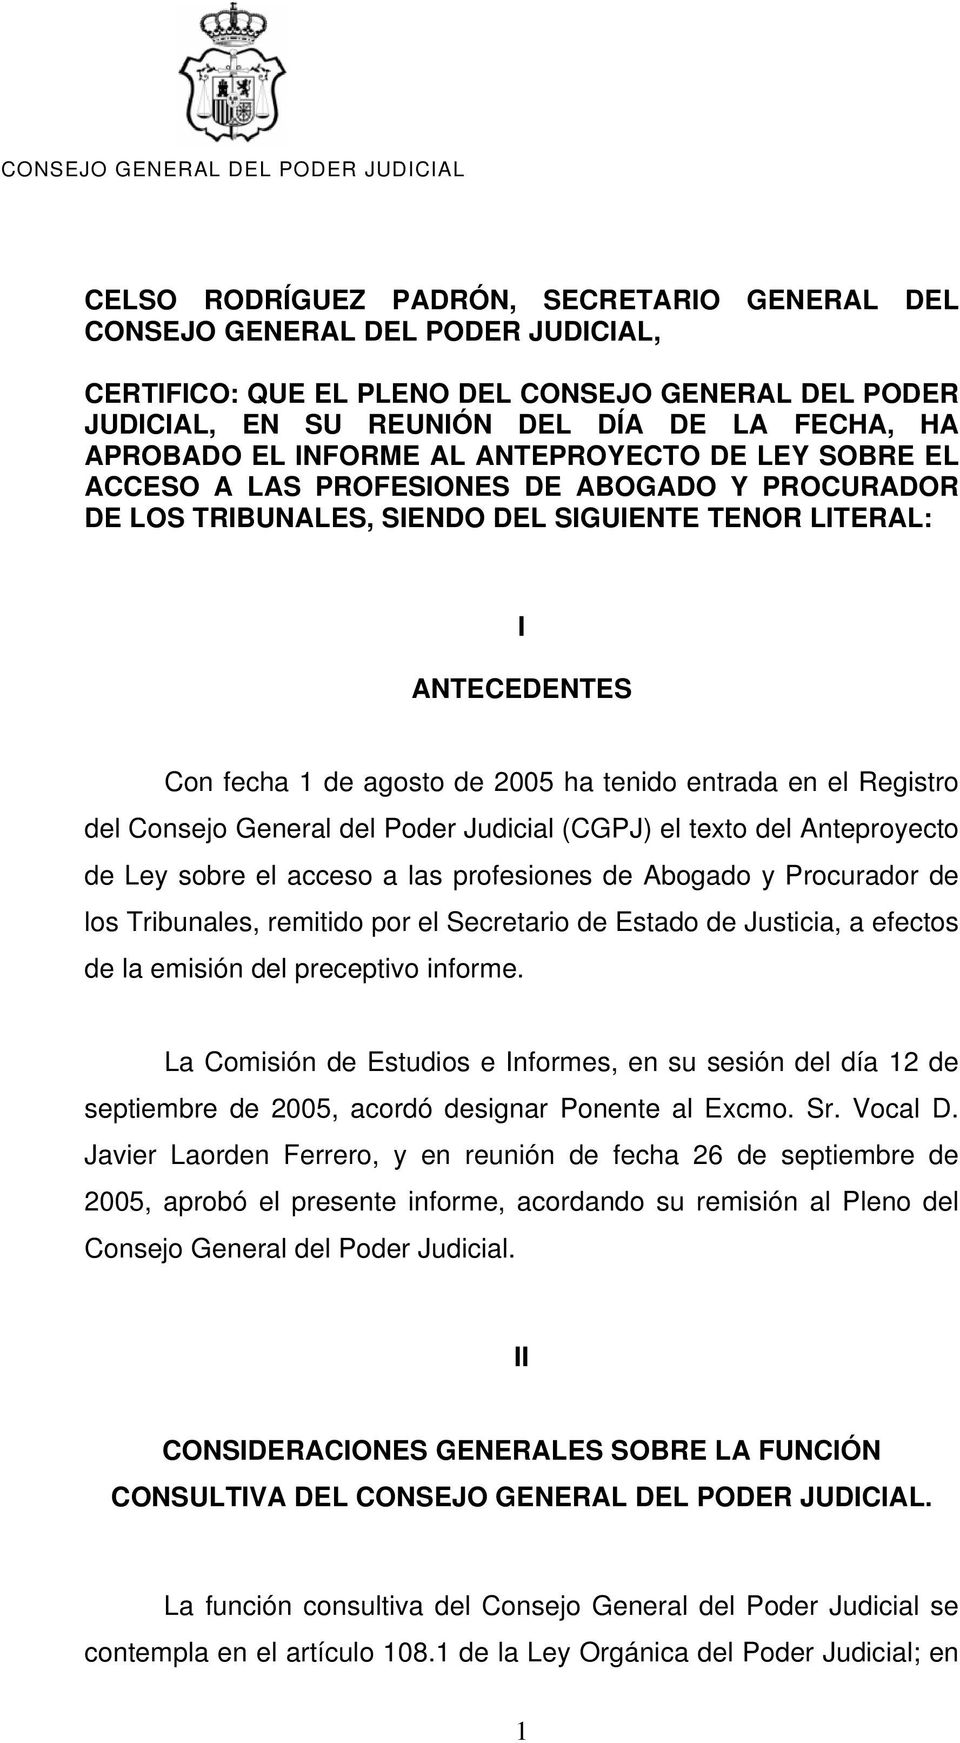 entrada en el Registro del Consejo General del Poder Judicial (CGPJ) el texto del Anteproyecto de Ley sobre el acceso a las profesiones de Abogado y Procurador de los Tribunales, remitido por el